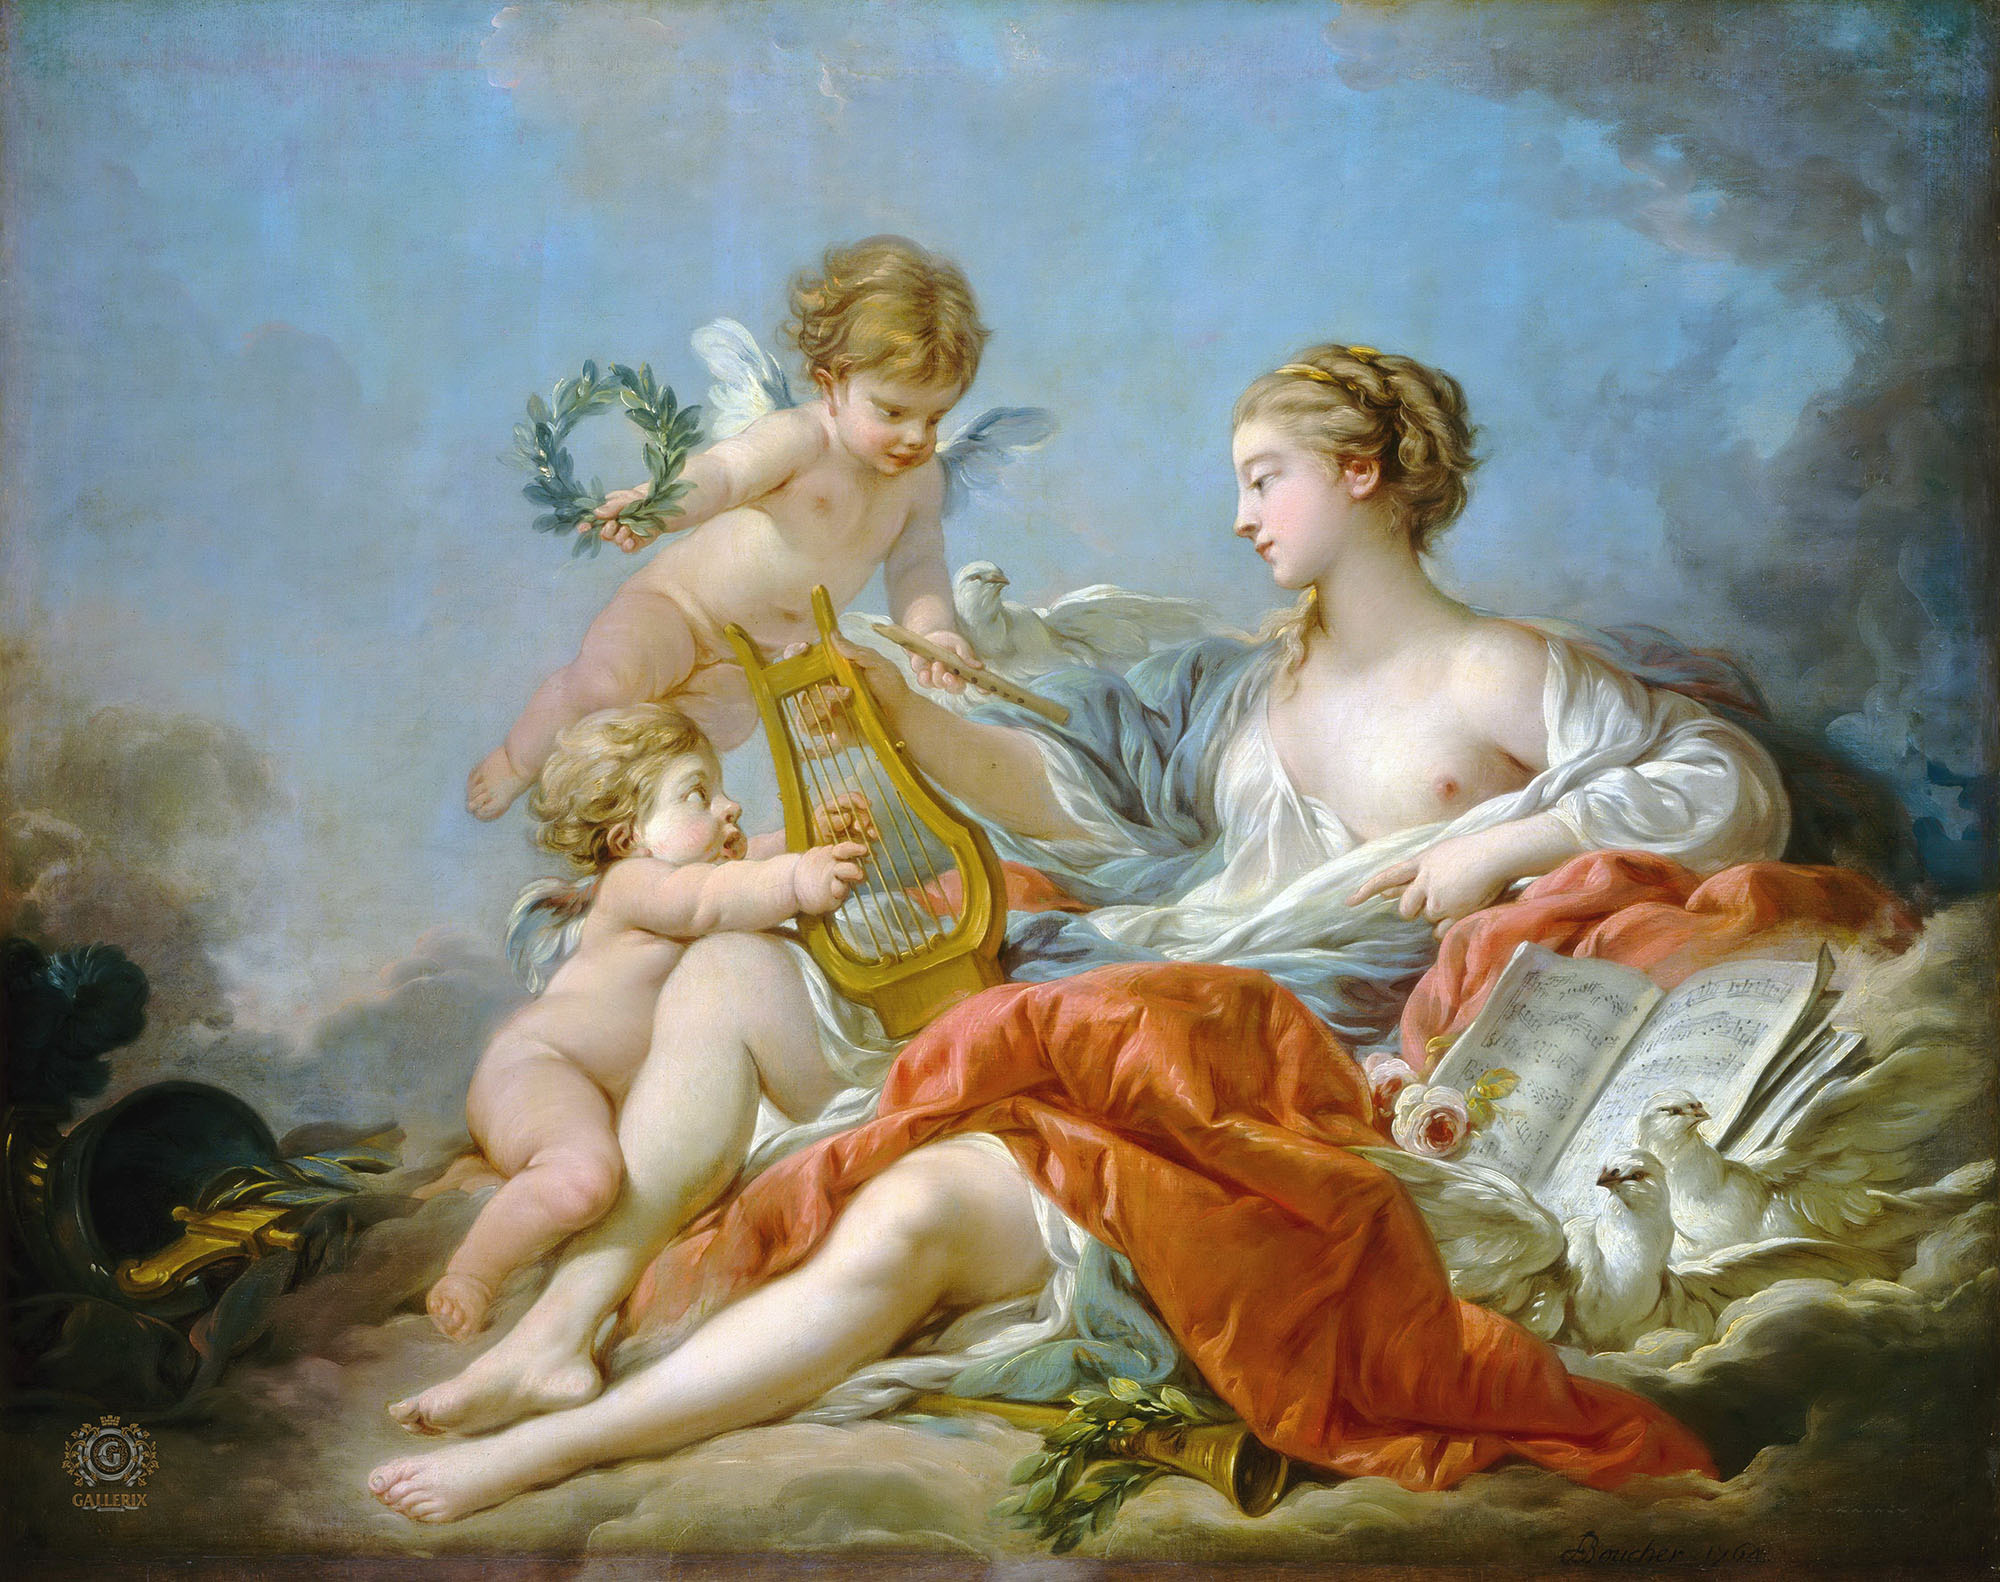 Франсуа Буше. "Аллегория музыки". 1764. Национальная галерея, Вашингтон.